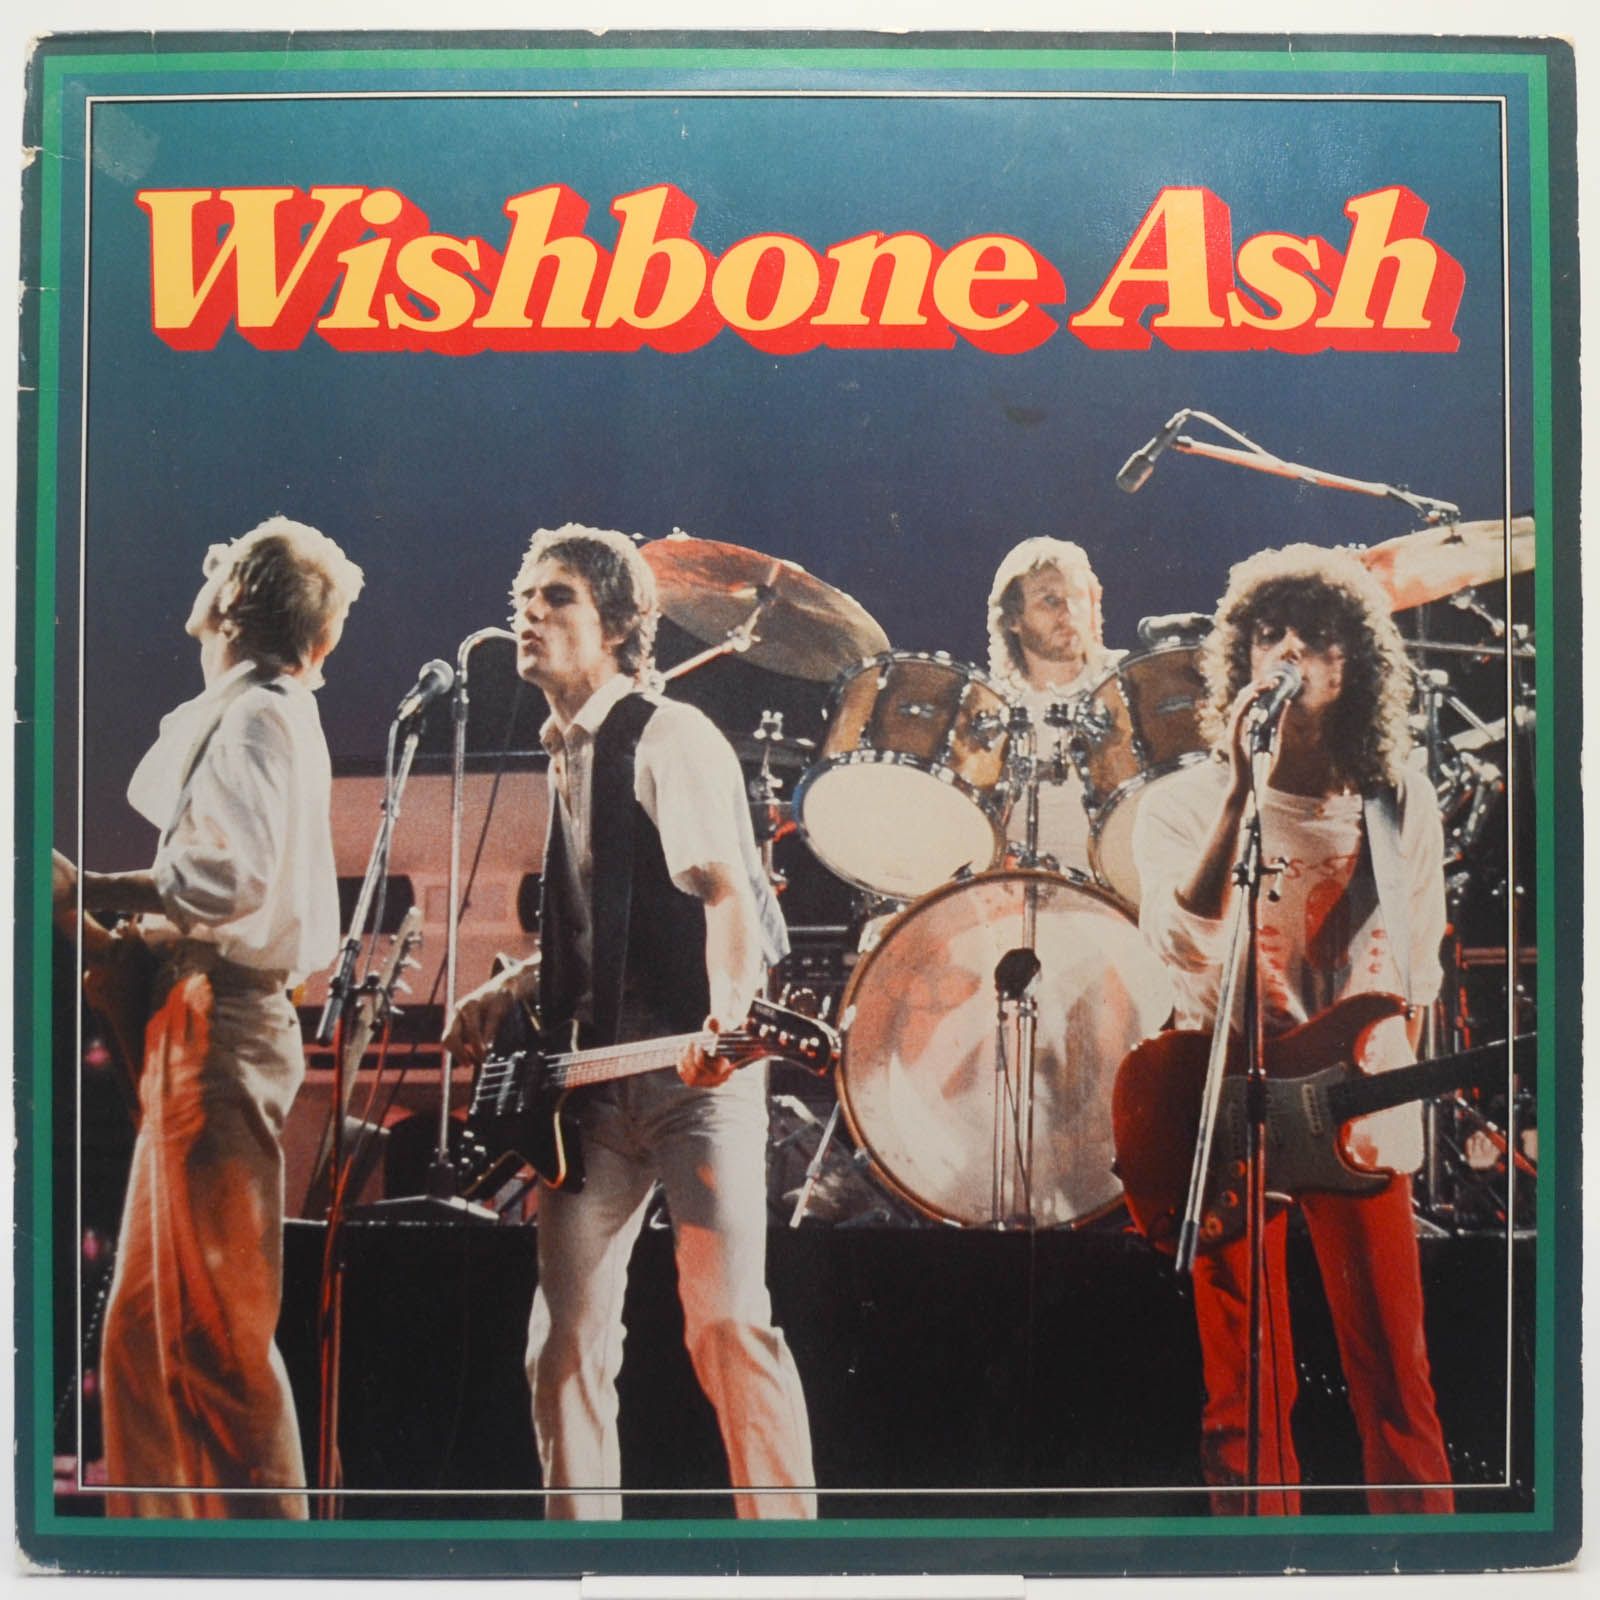 Wishbone Ash — Wishbone Ash, 1977